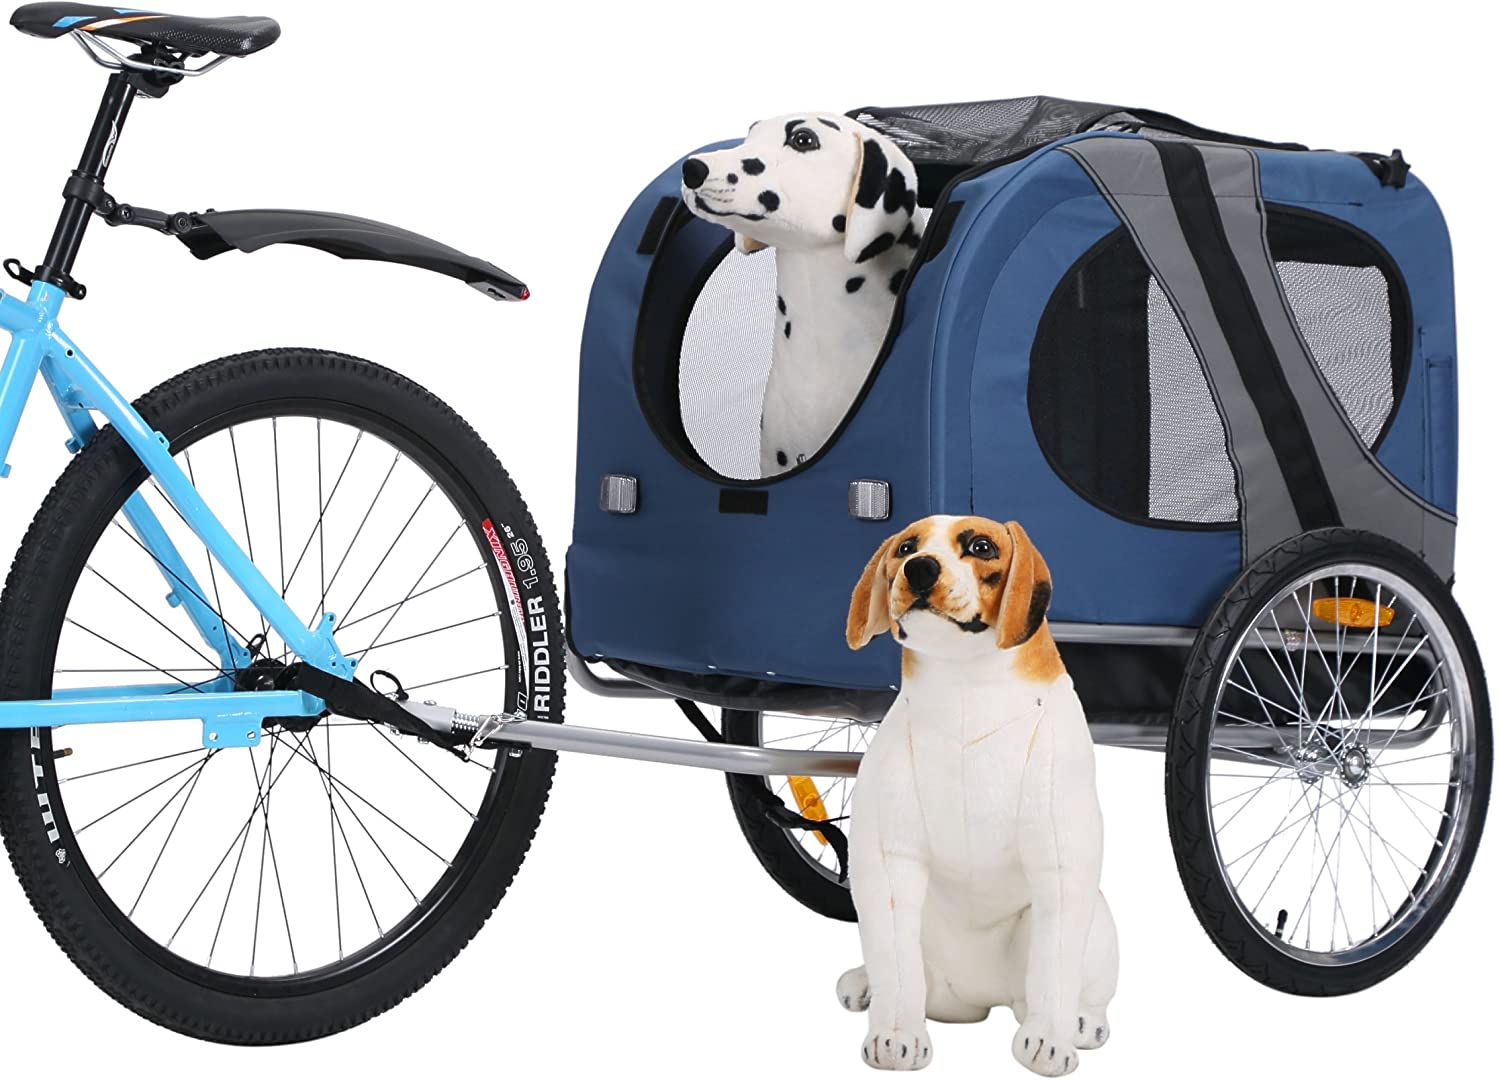  Leonpets mascotas Remolque de bicicleta Perros Carro Transporter con acoplamiento universal azul nuevo 10117 